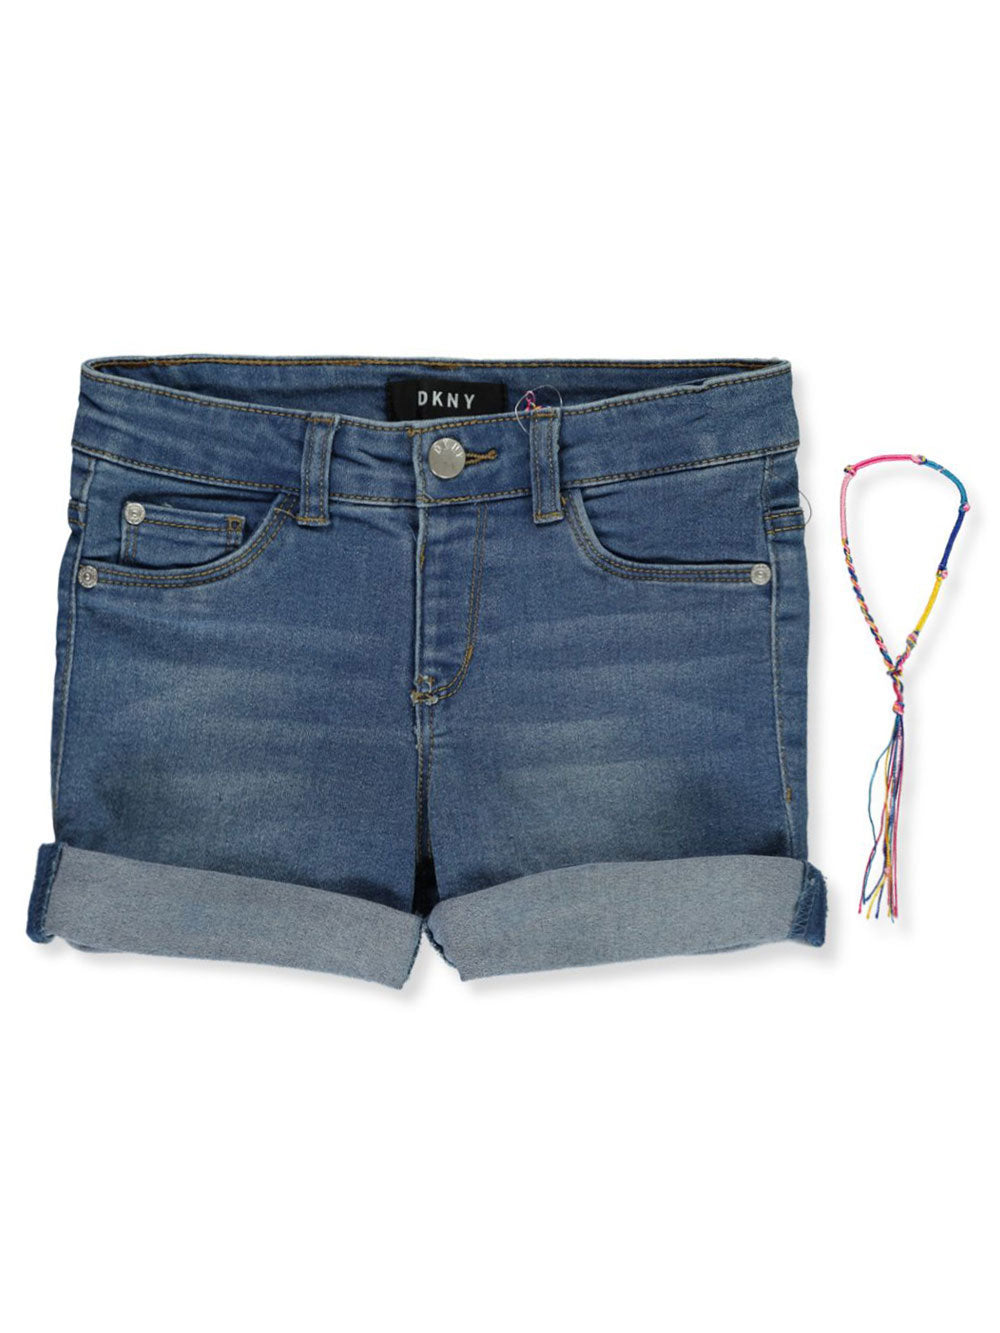 DKNY Girl's Denim Shorts-Bleeker